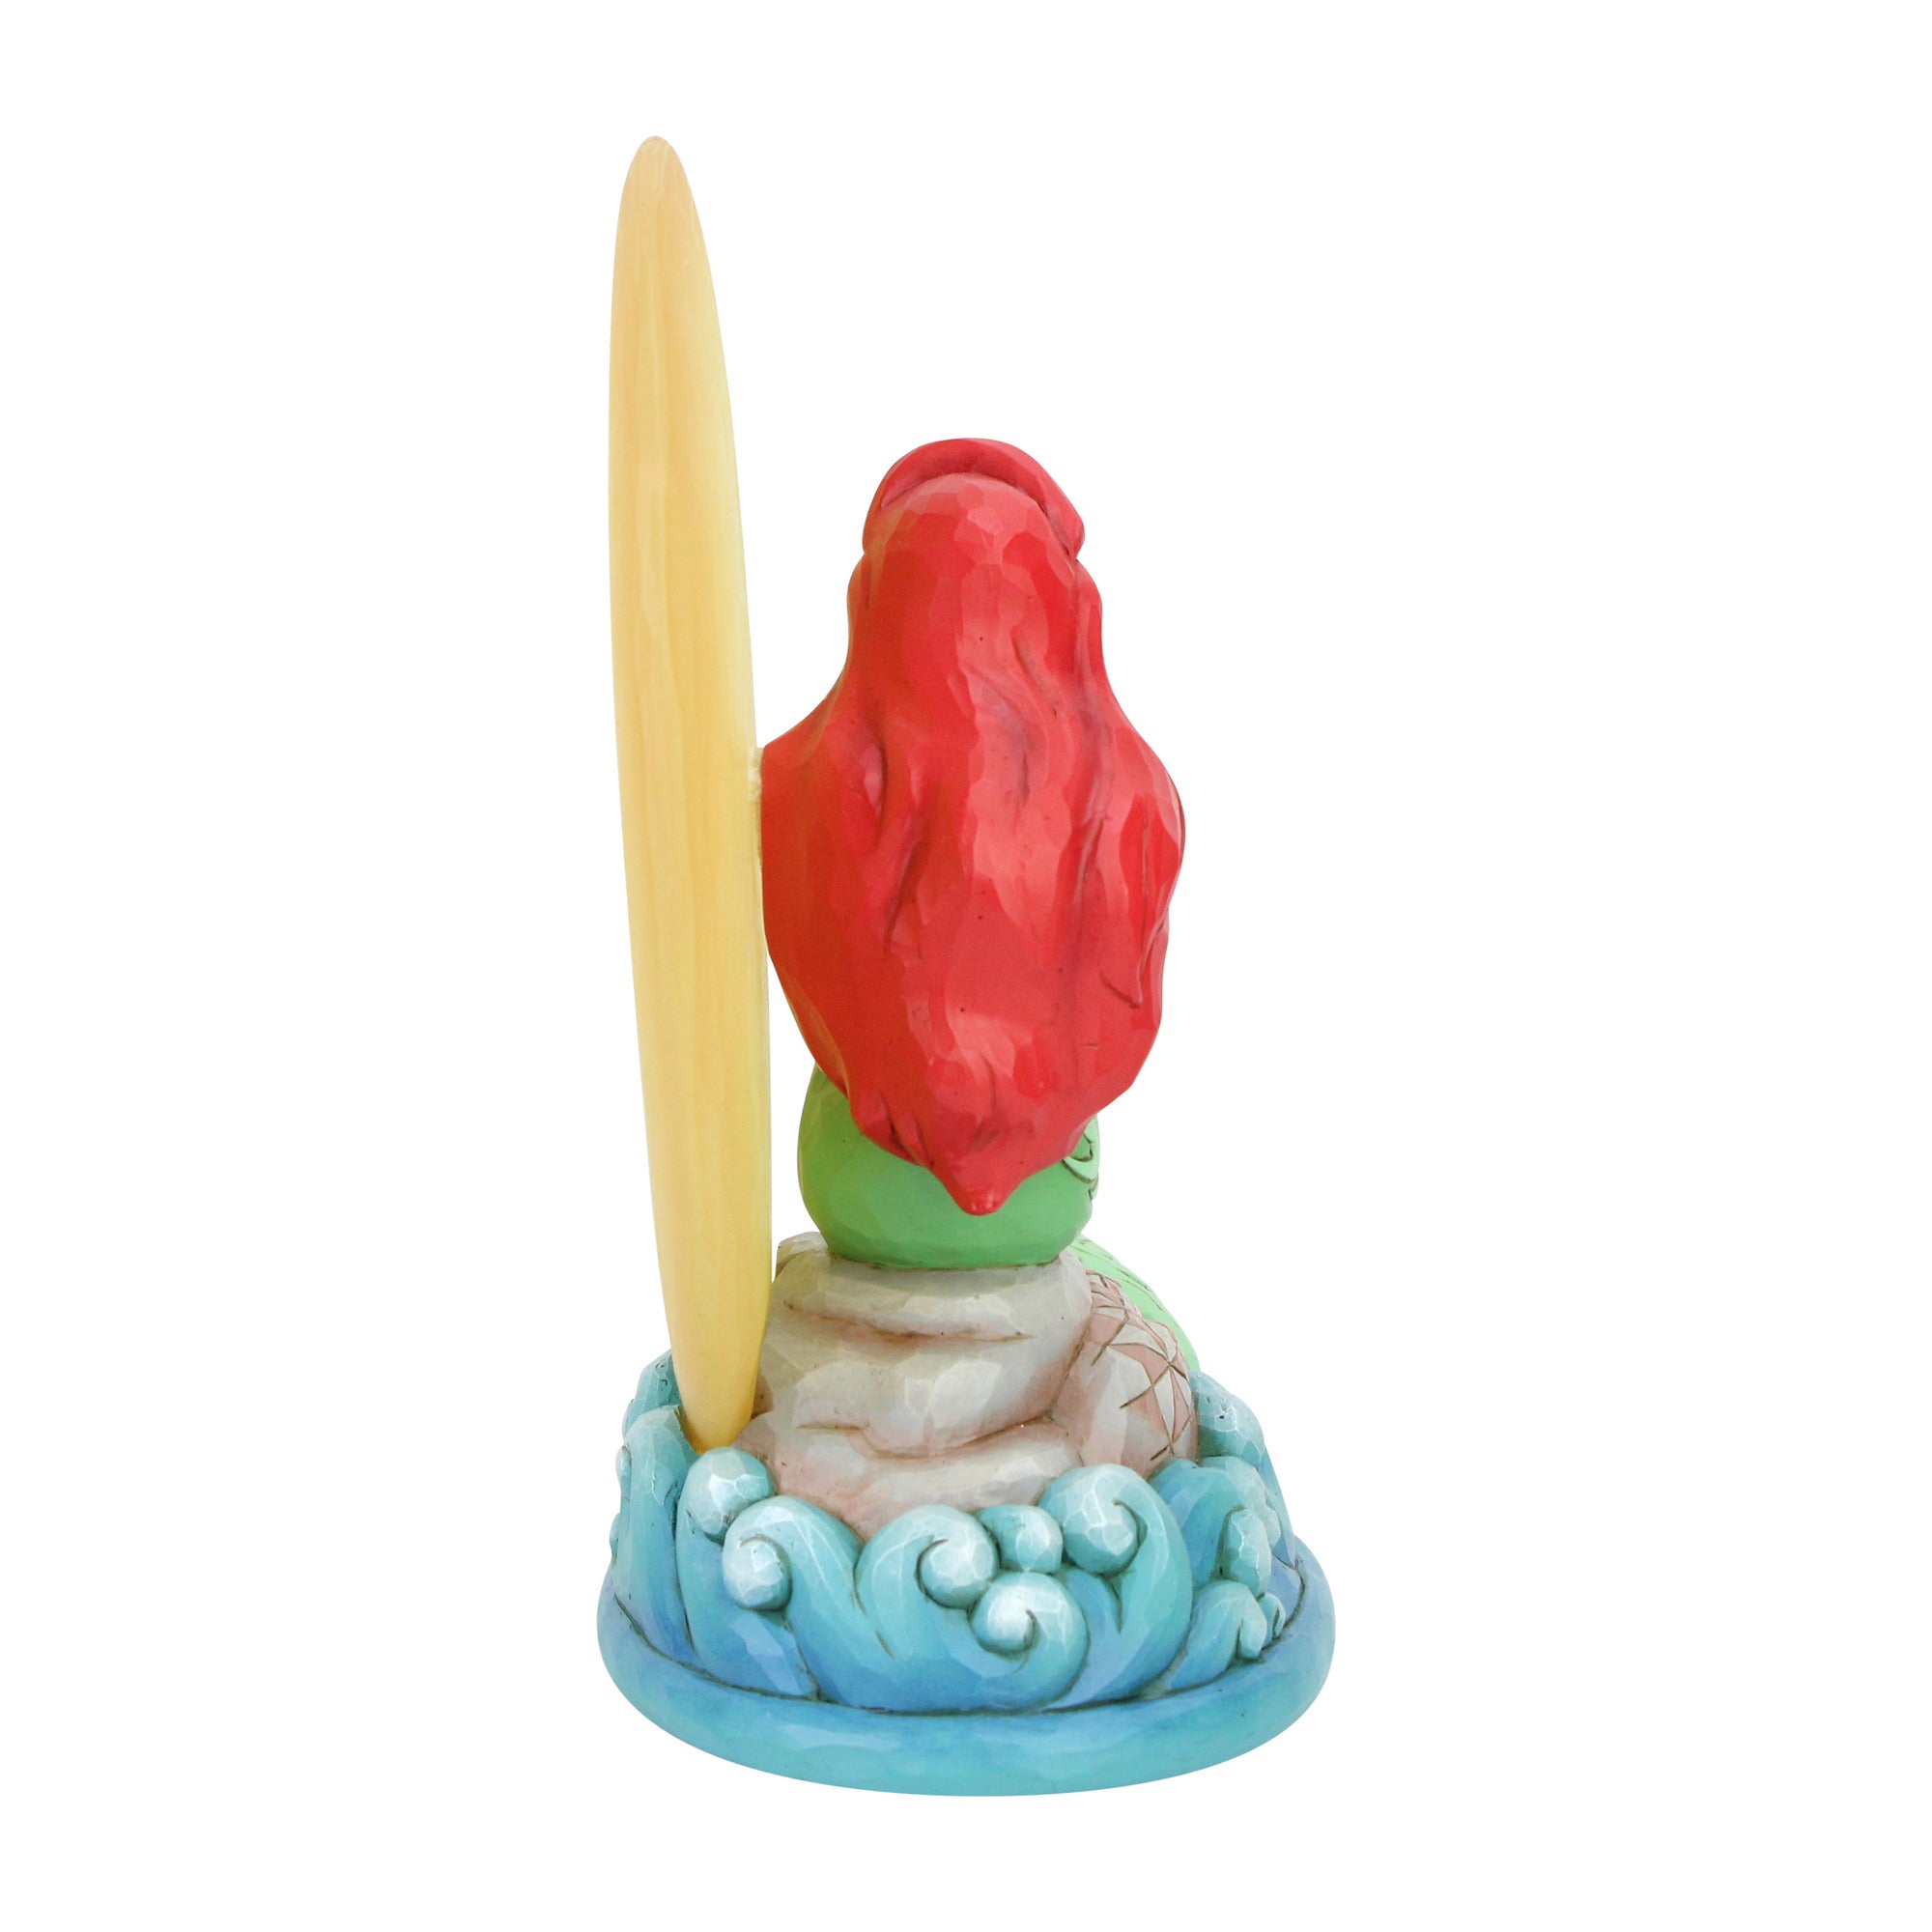 The Little Mermaid - Ariel Sitting On Rock By Moon